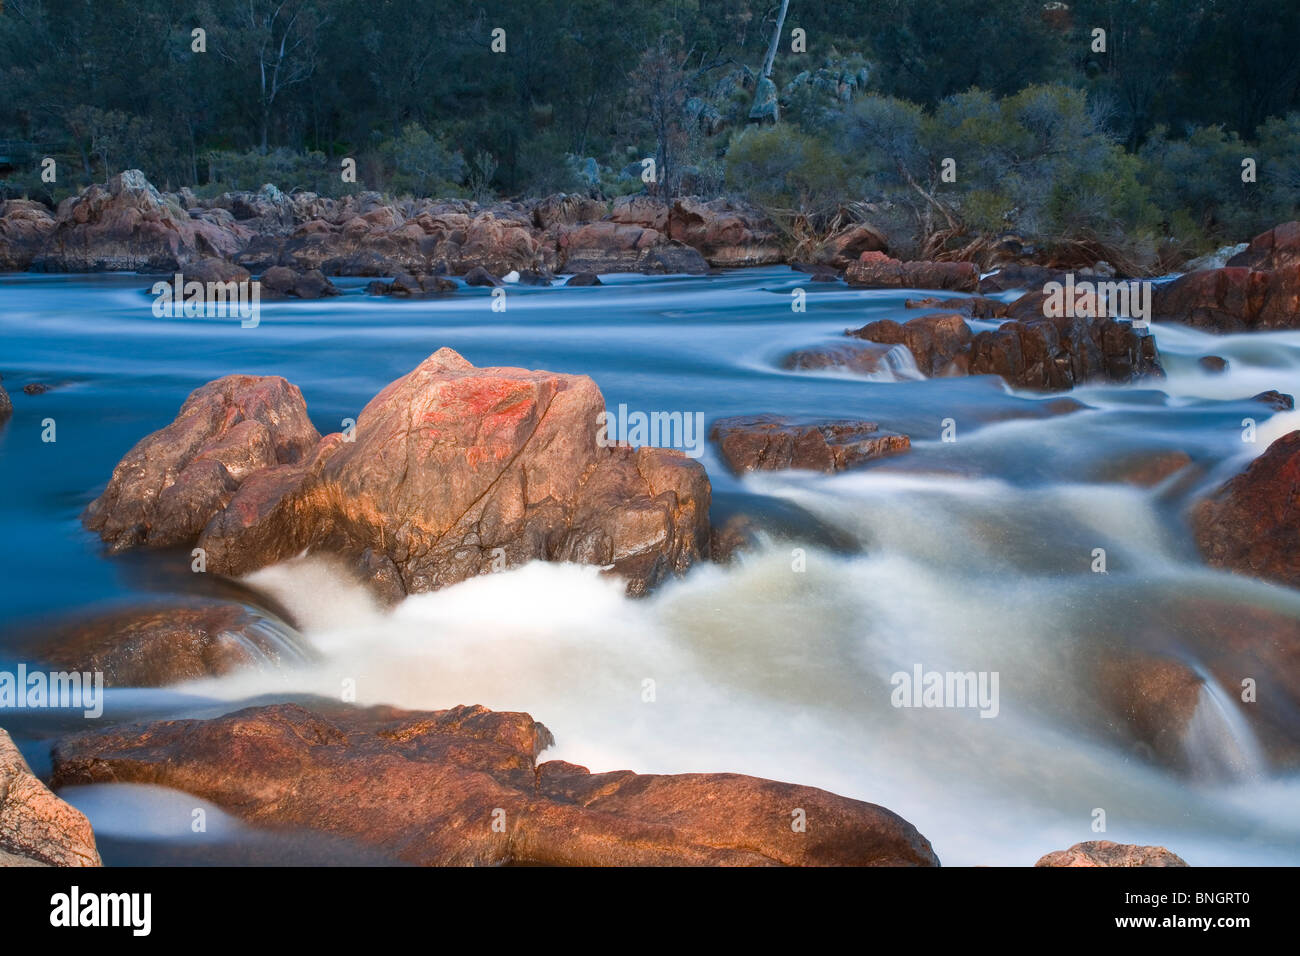 Rocas de granito y agua blanca en campanas rápidos en el río Avon, Perth. Australia Occidental Foto de stock